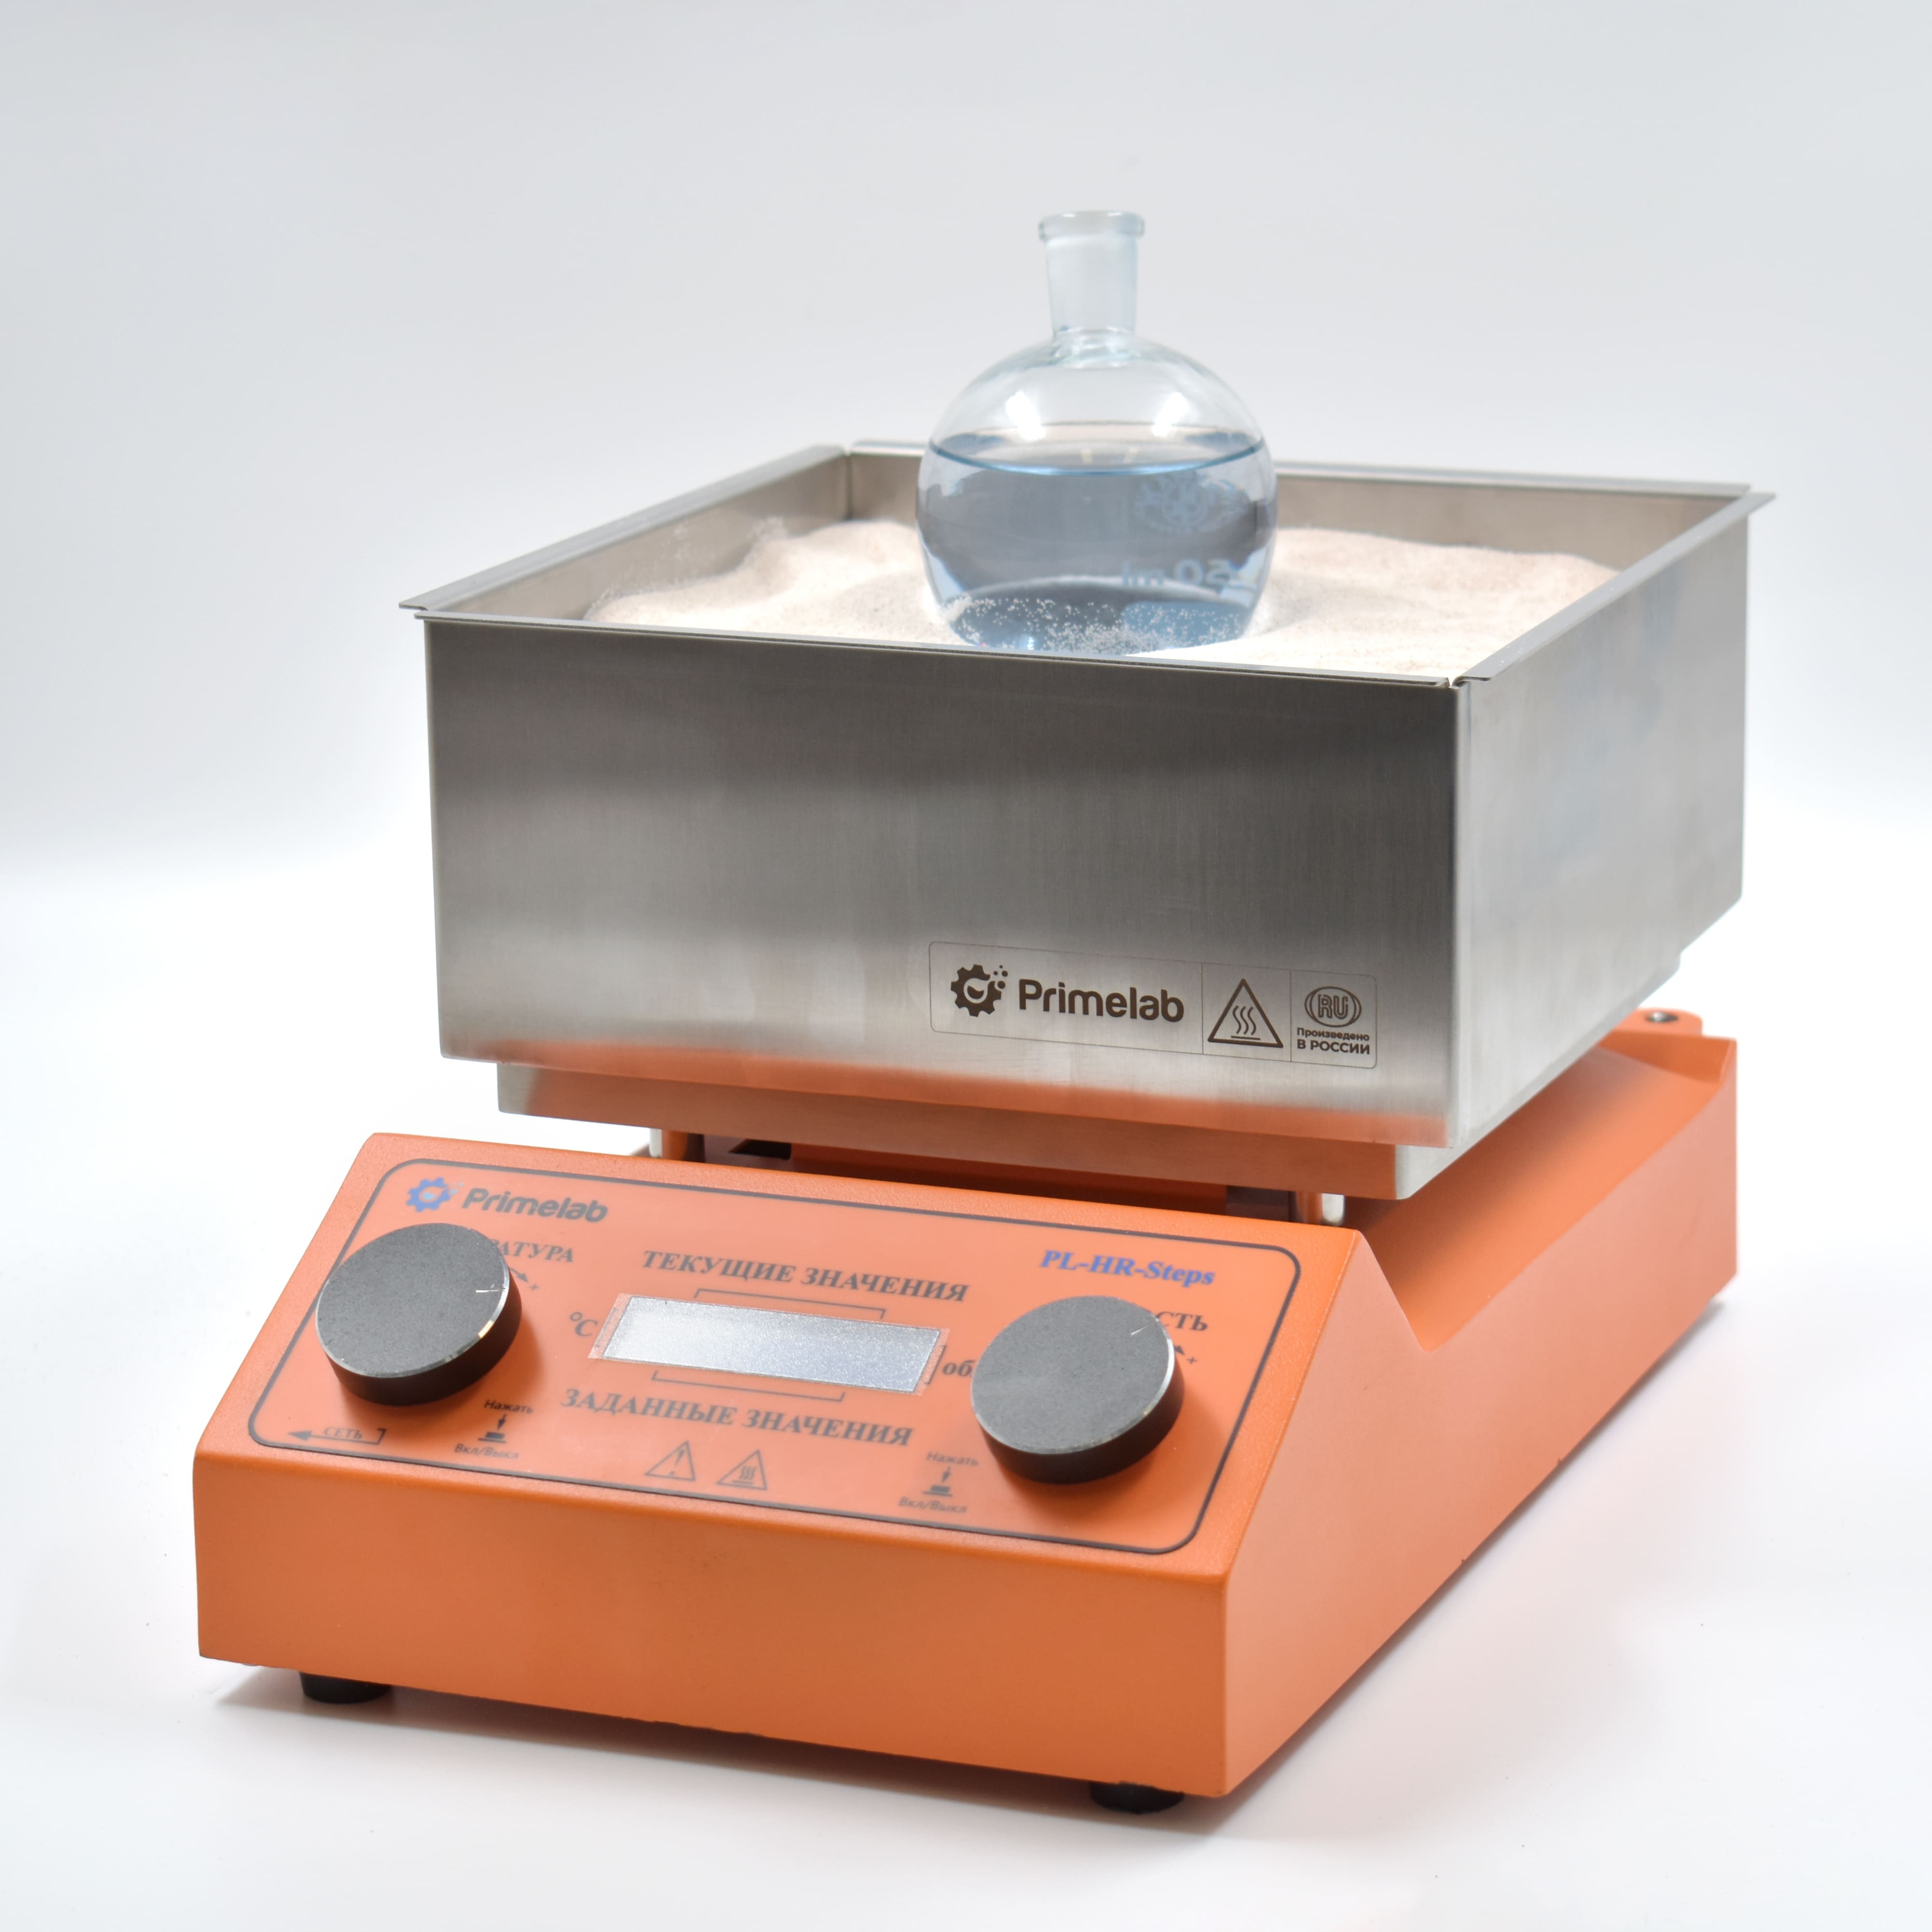 Programmable magnetic stirrer with heating PL-HR-steps. Primelab